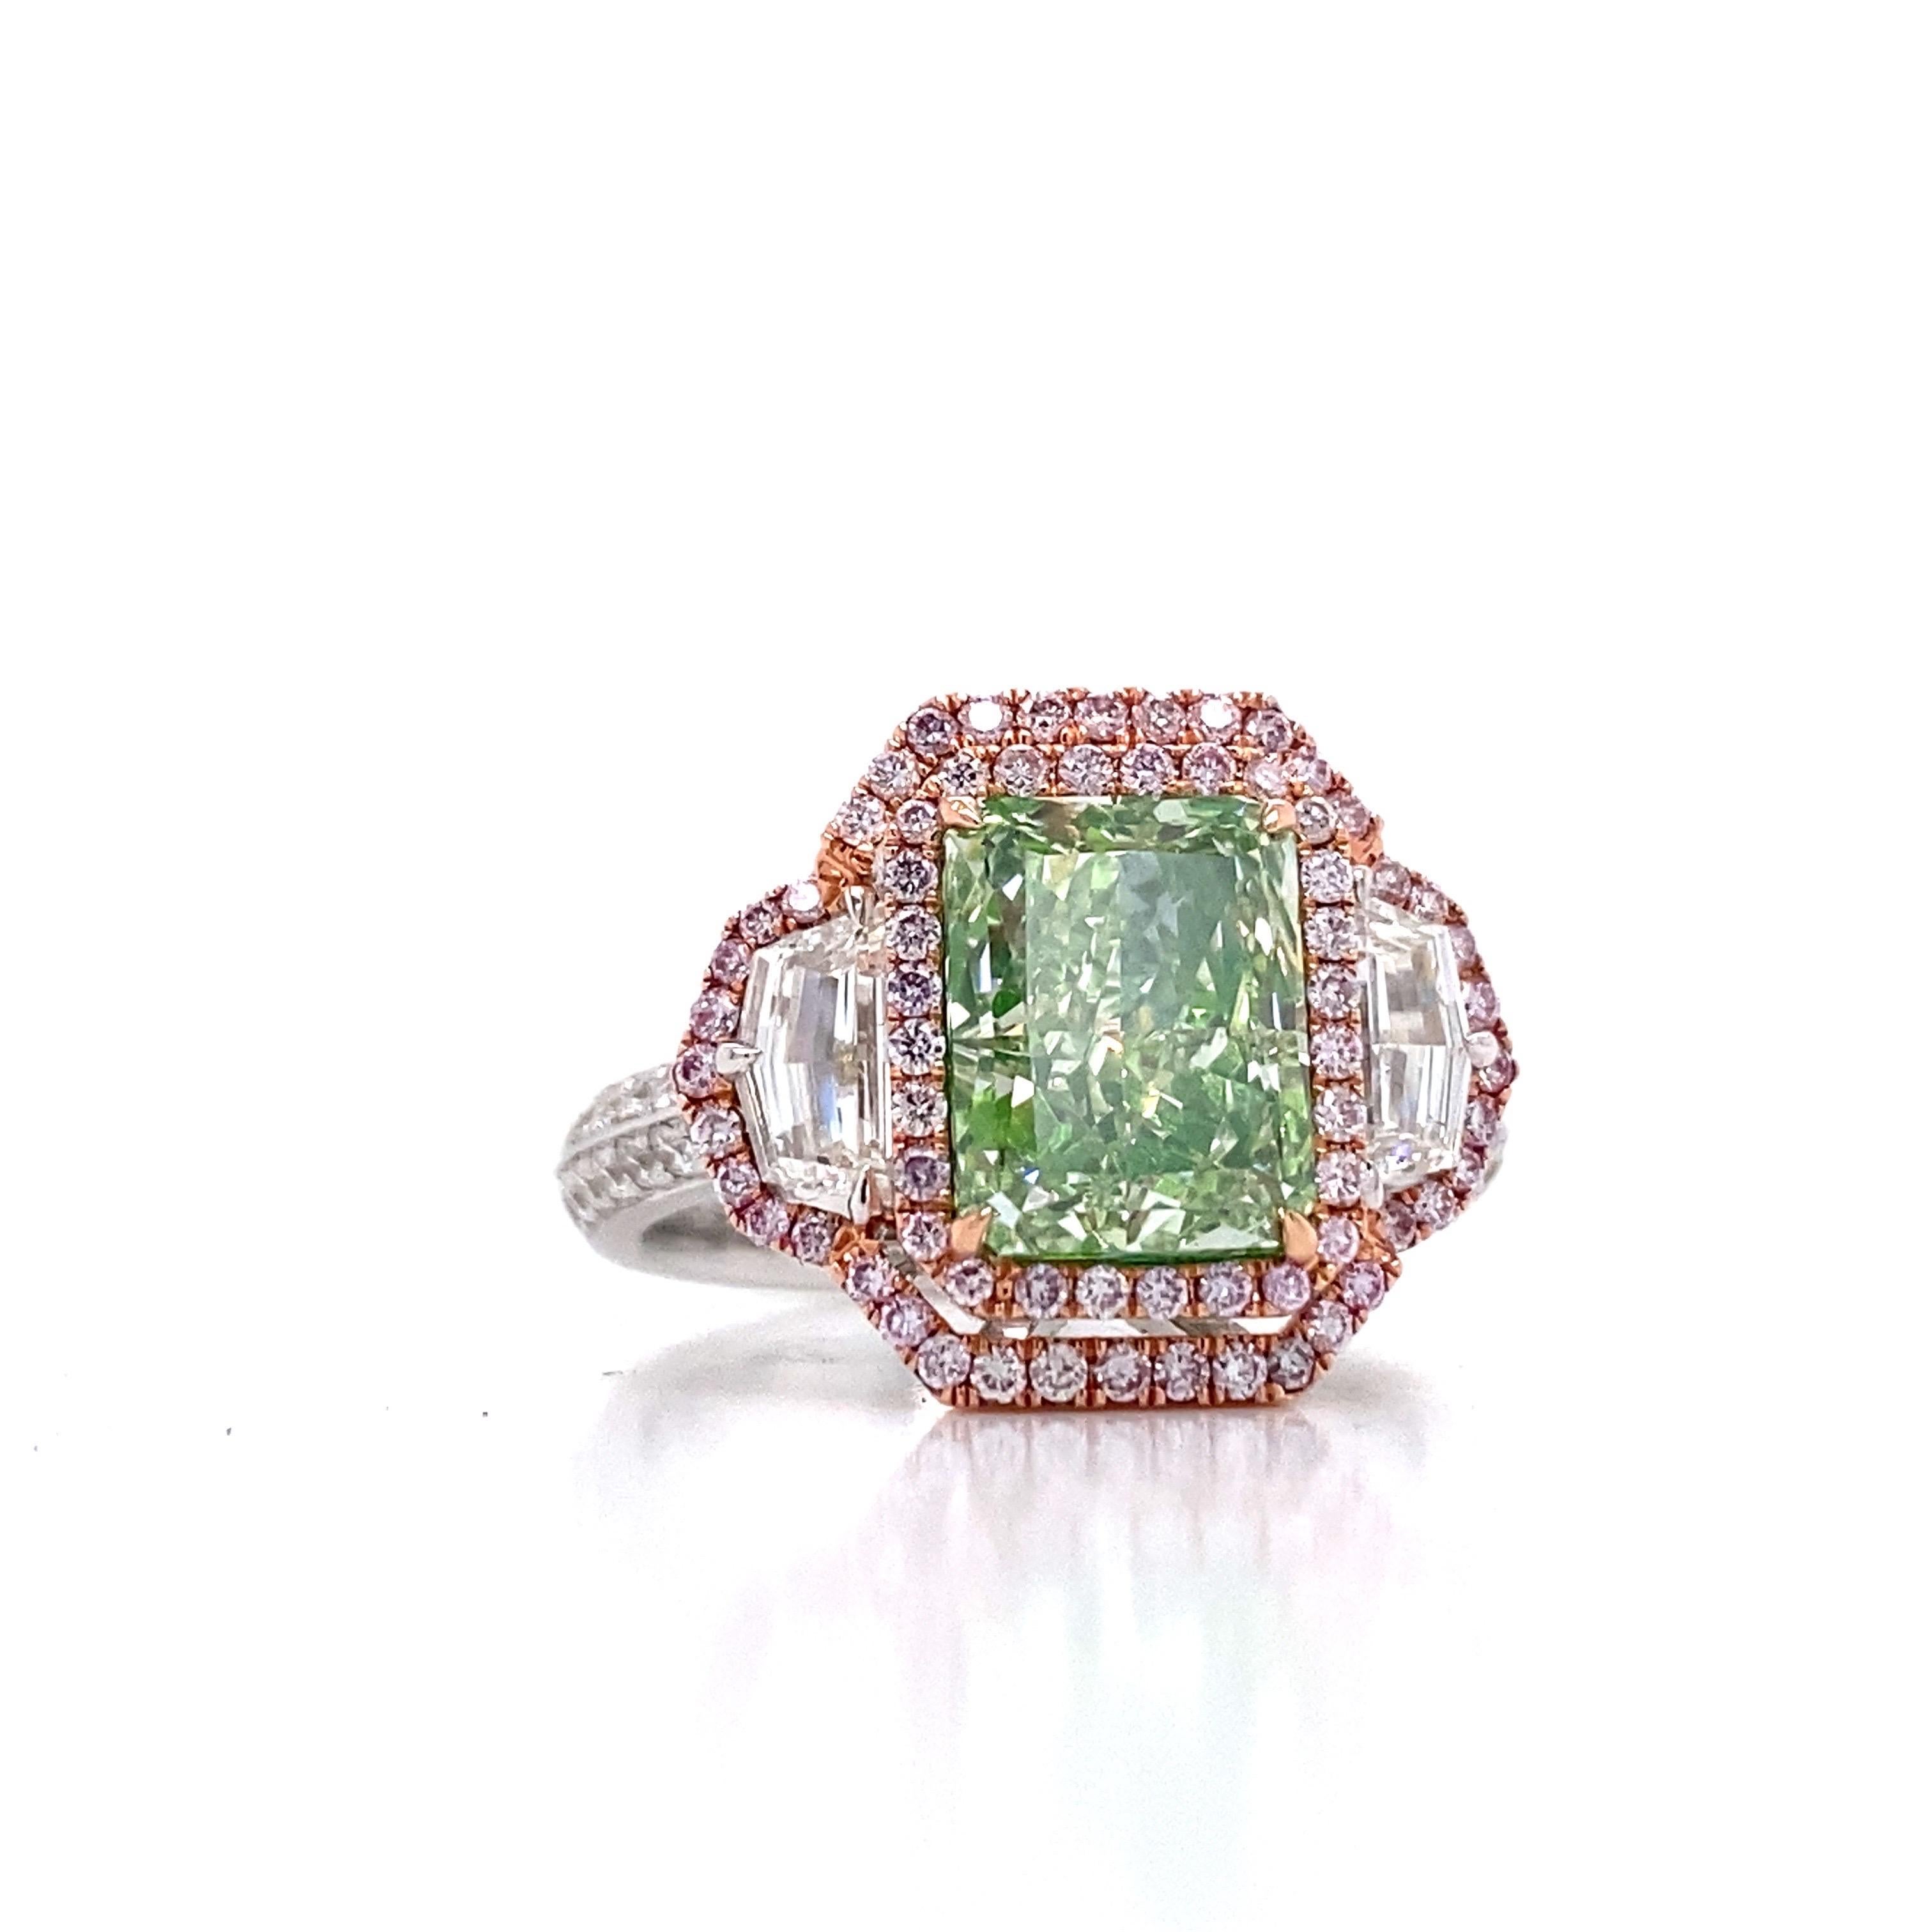 Aus dem Tresor von Emilio Jewelry in der berühmten Fifth Avenue in New York,
Präsentiert wird ein ganz besonderer und seltener Gia-zertifizierter natürlicher grünlicher Diamant mit einem Gewicht von über 3,00 Karat. Bitte erkundigen Sie sich nach